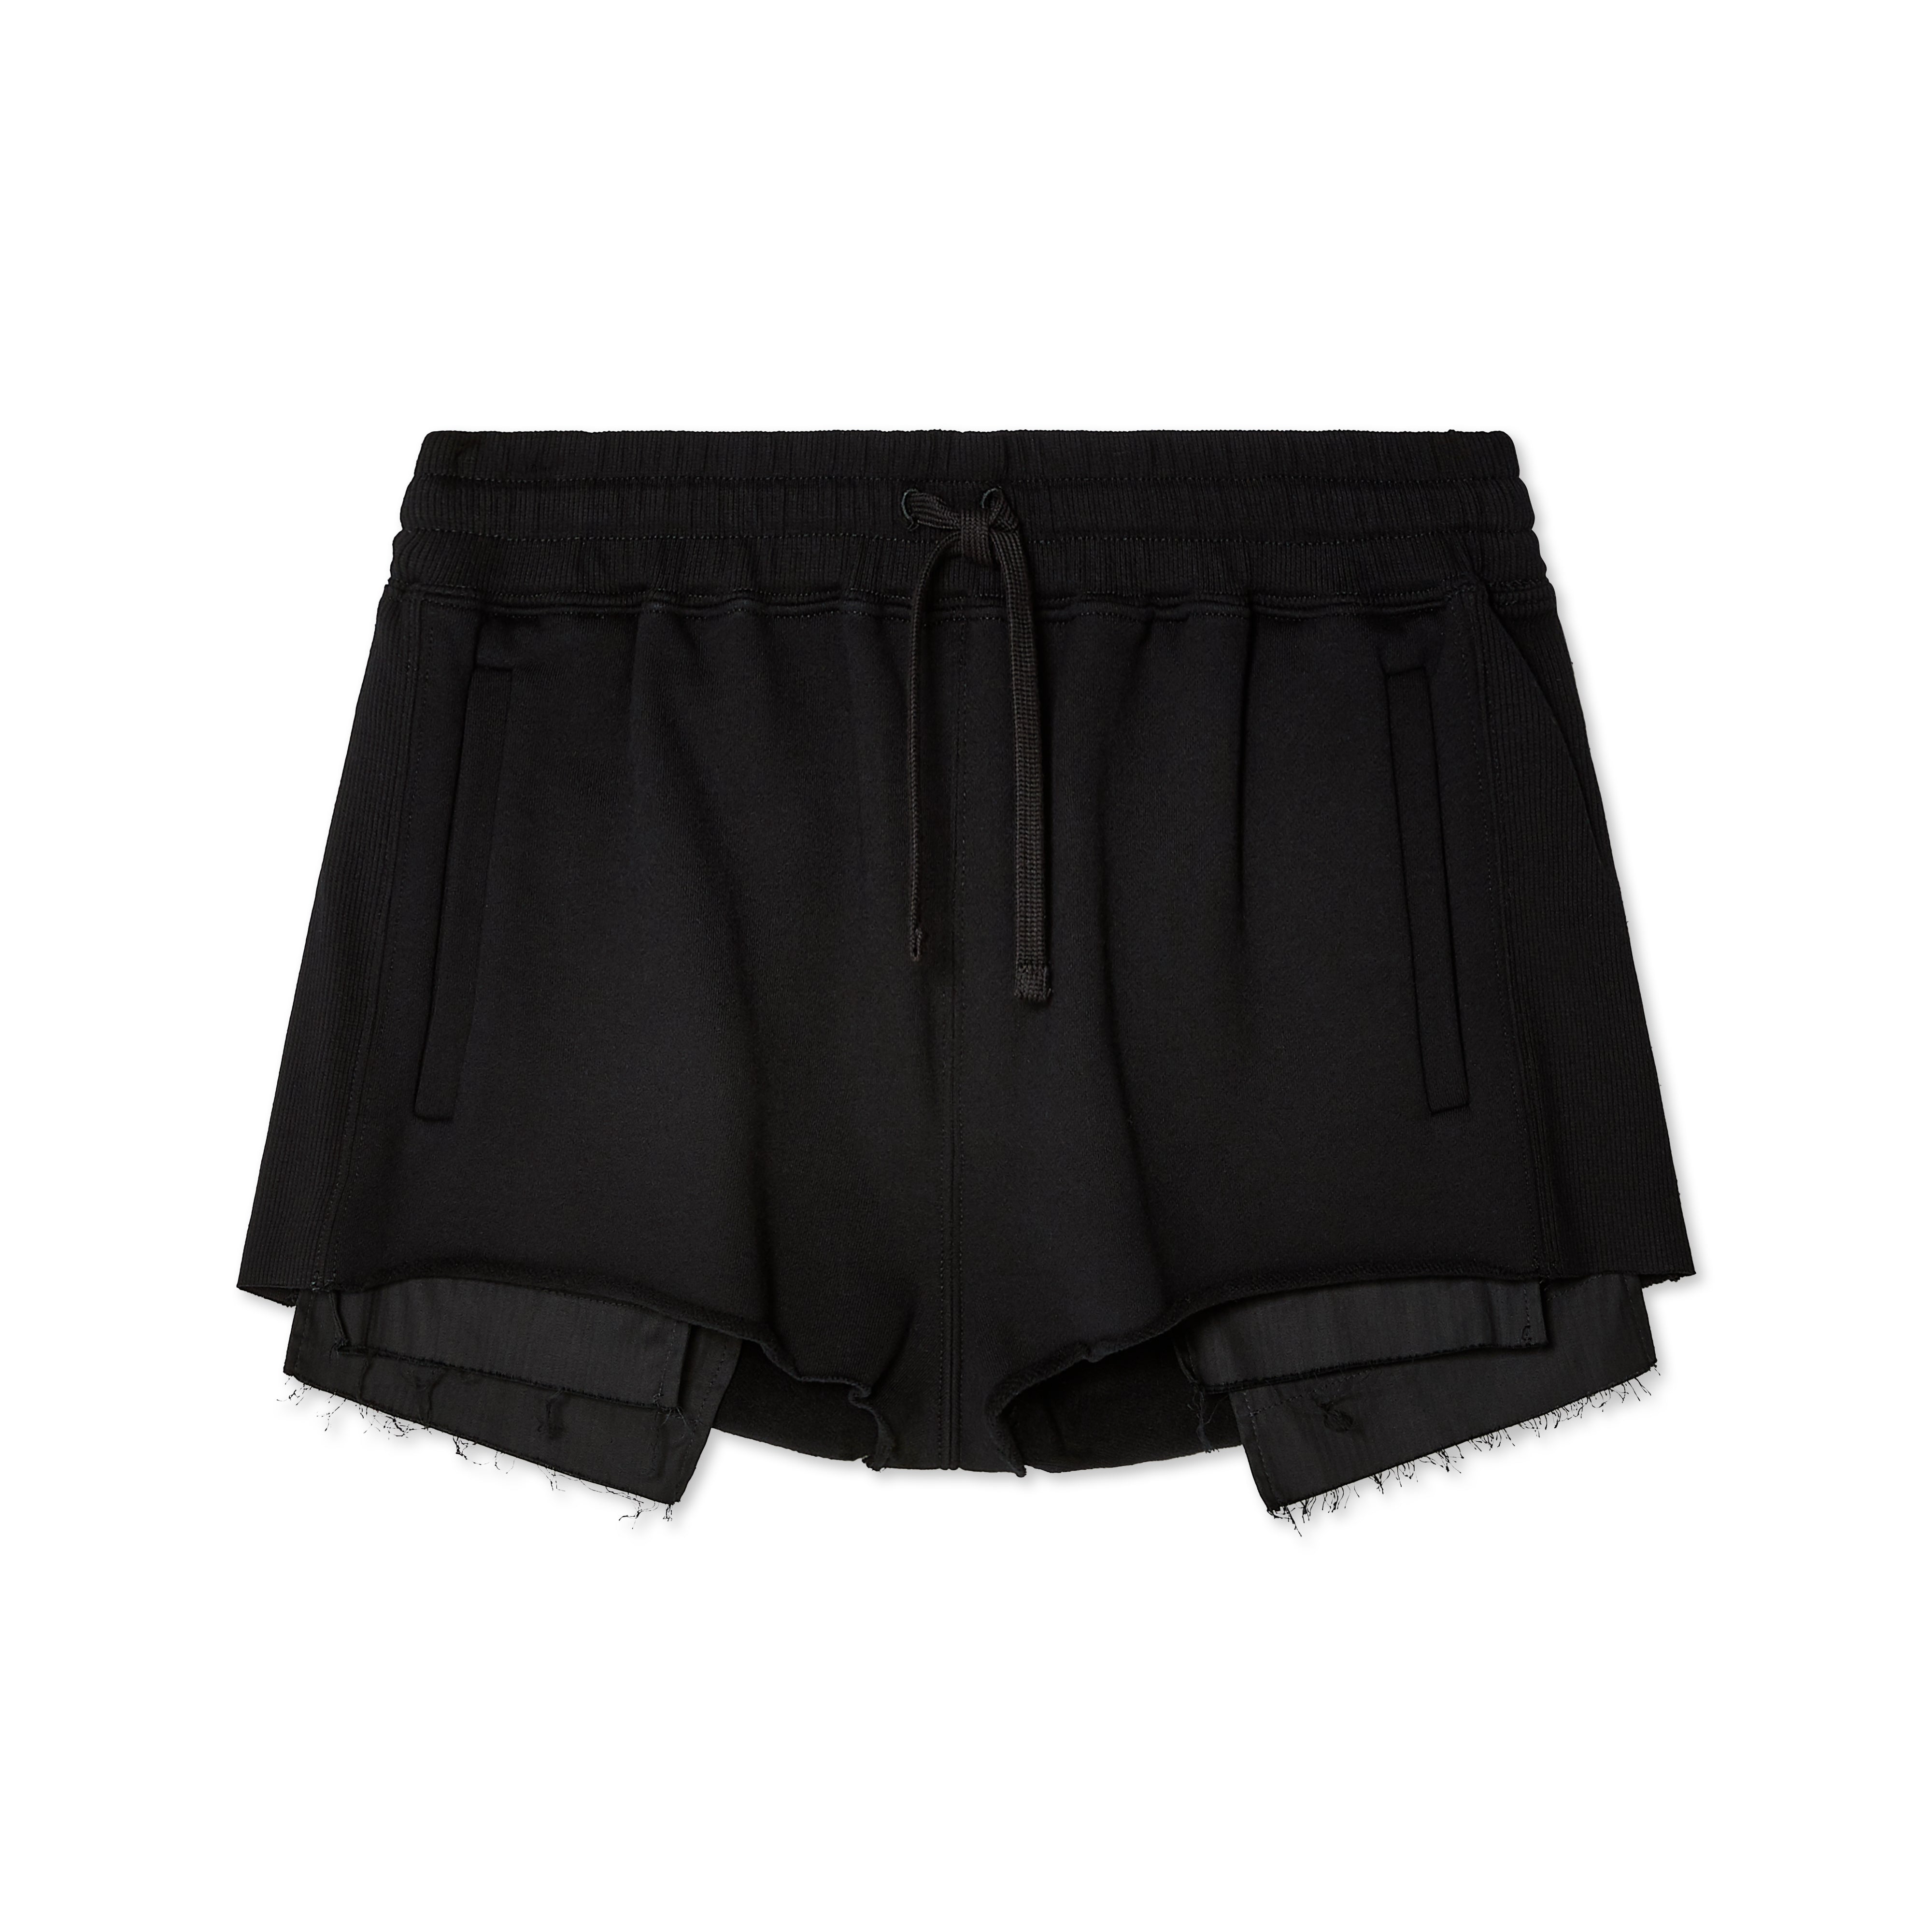 Miu Miu - Women's Shorts - (Black) – DSMNY E-SHOP